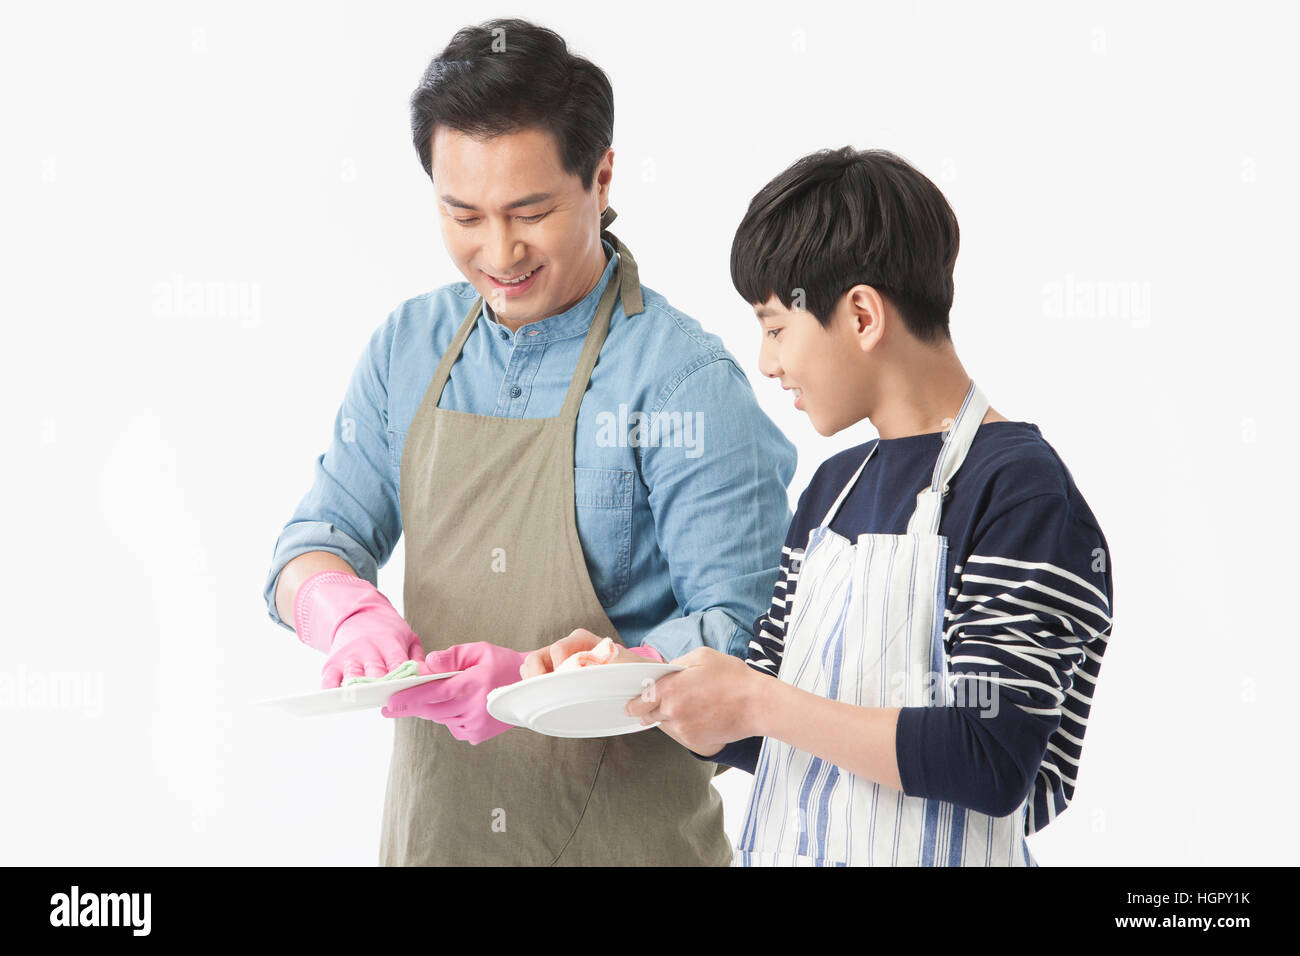 Padre e hijo armonioso lavar los platos Foto de stock